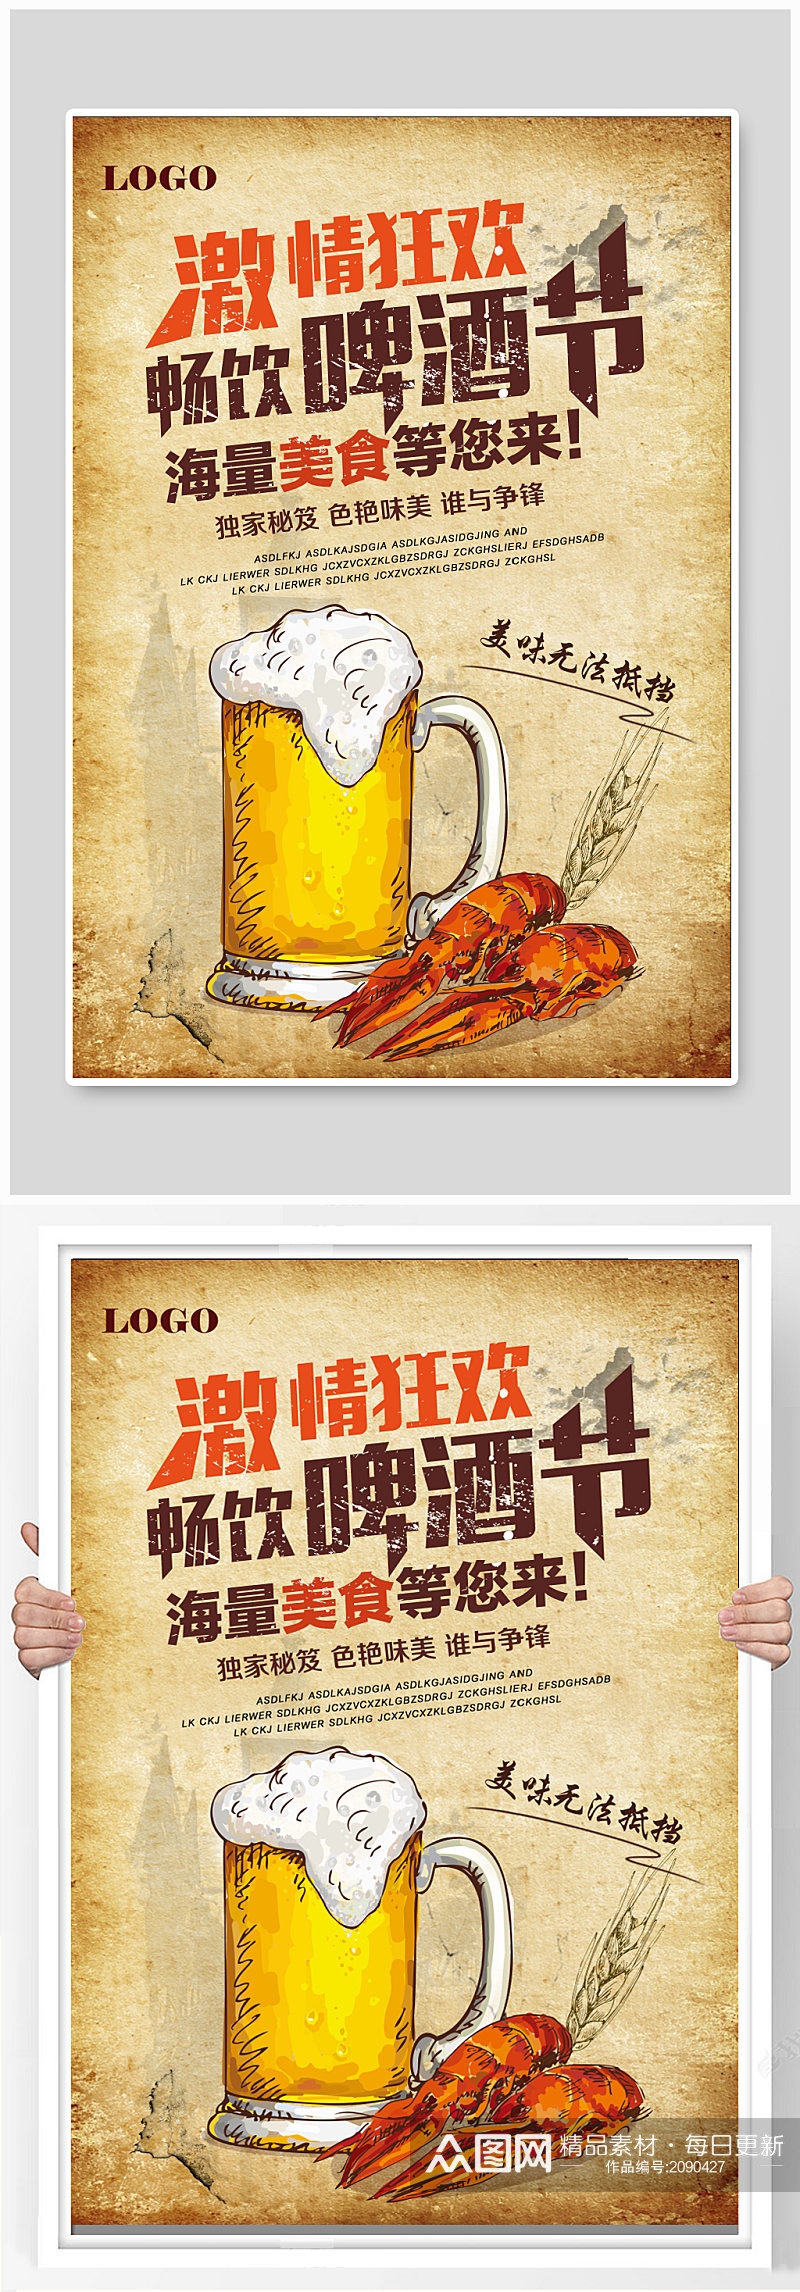 啤酒复古海报模板素材